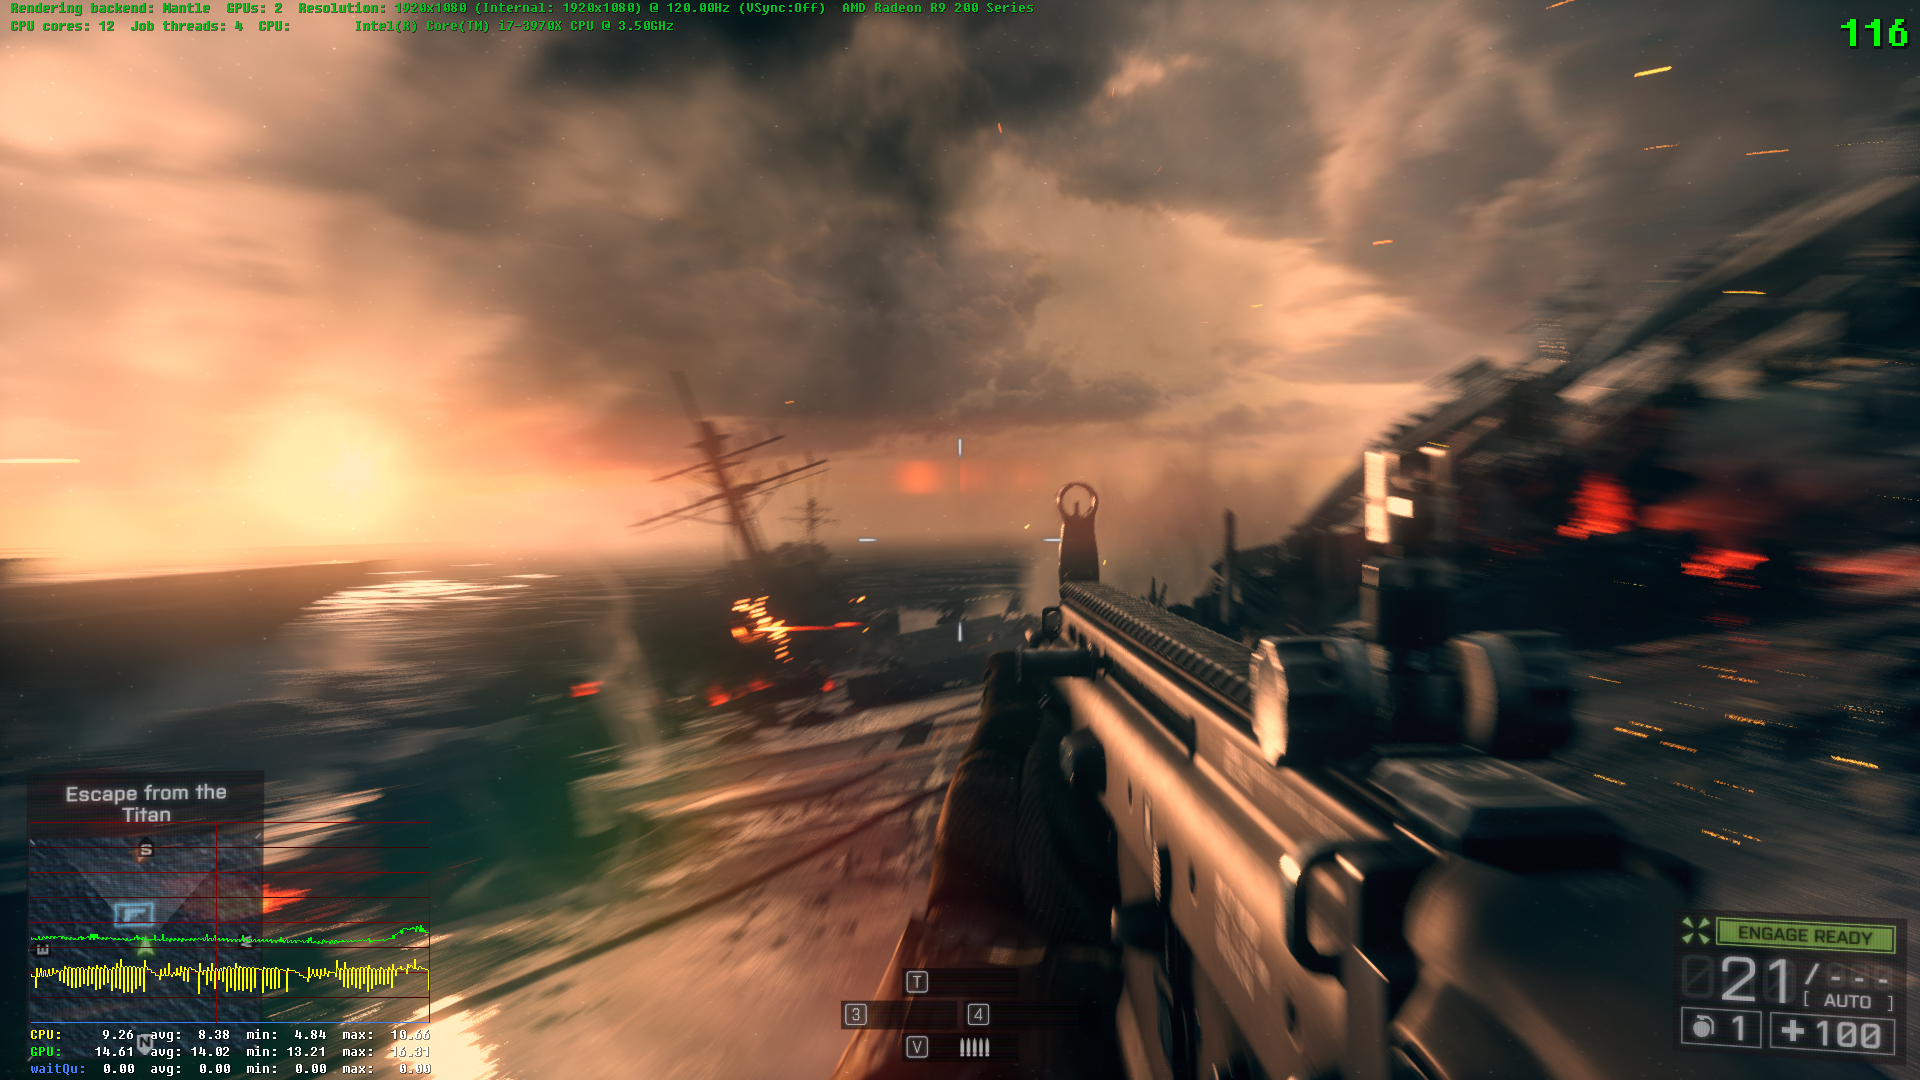 Battlefield 4 Next Gen Battlelog 2.0 Detailed - DirectX 11.1